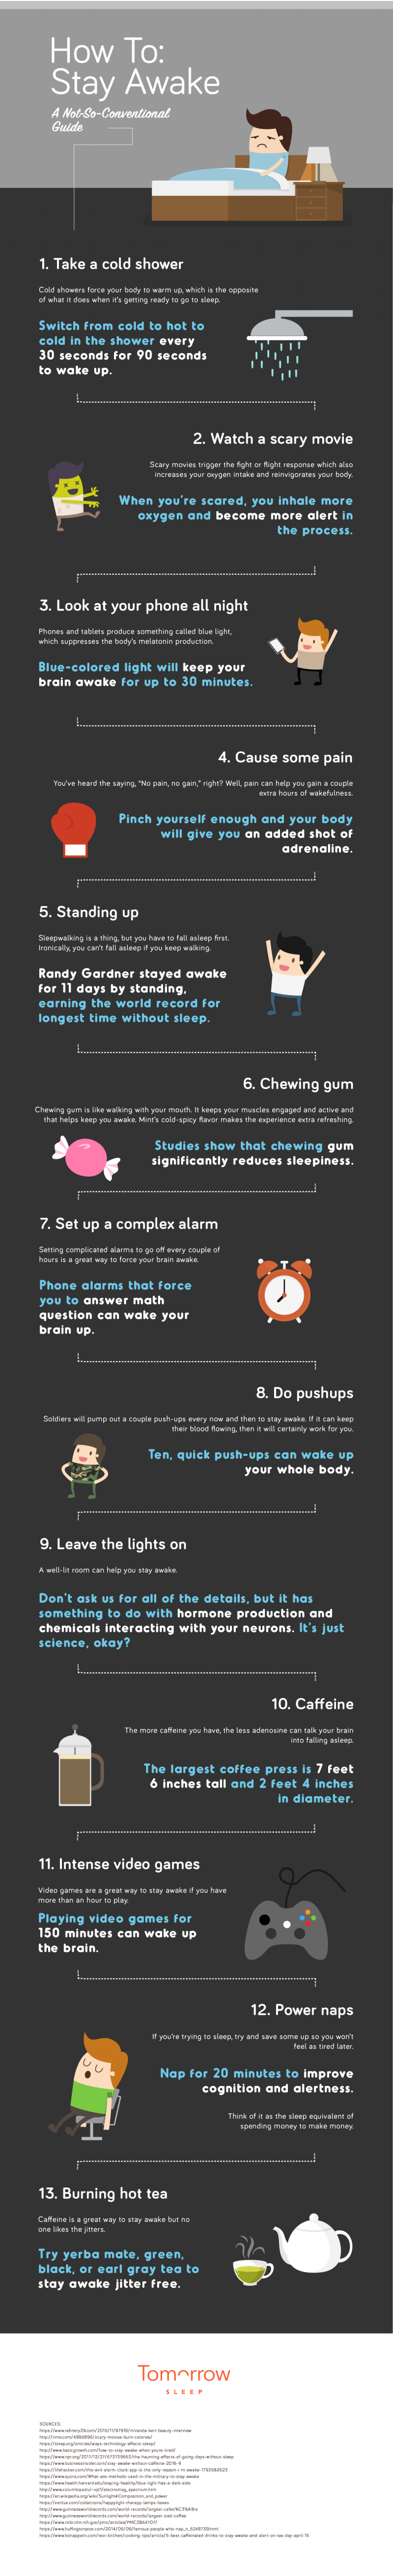 ways to feel awake